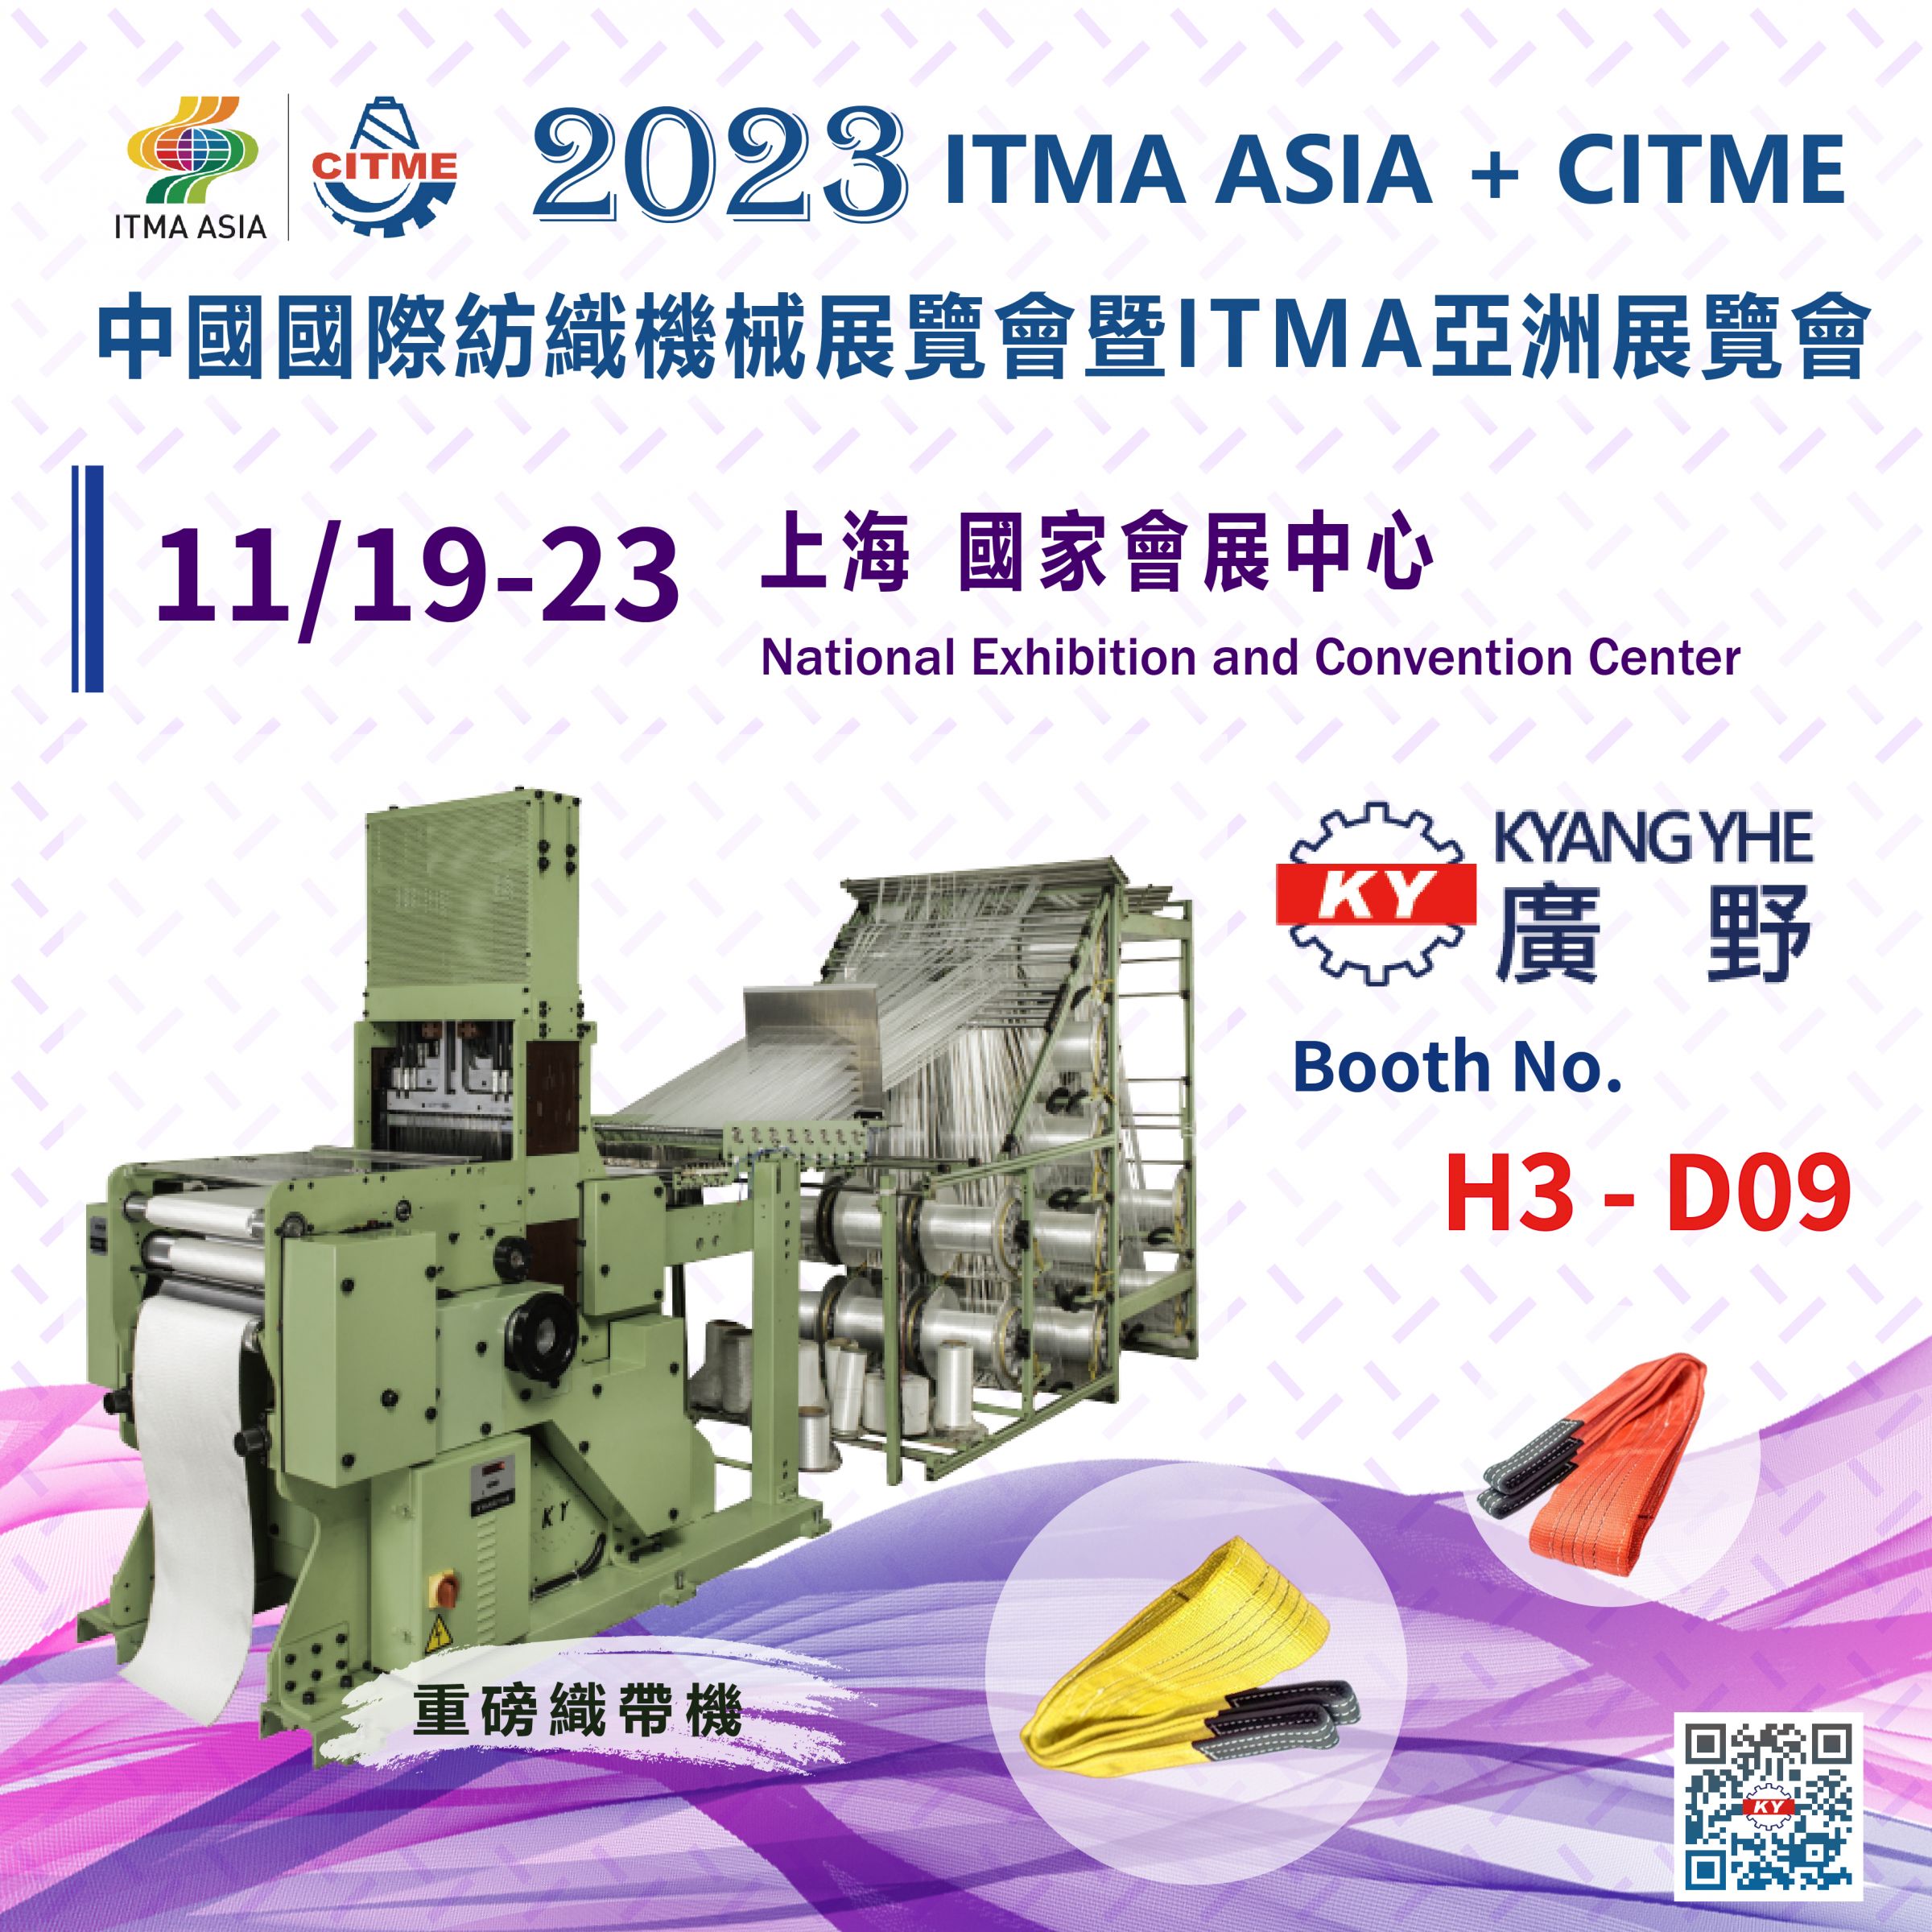 2023 ITMA ASIA + CITME ที่เซี่ยงไฮ้ ประเทศจีน